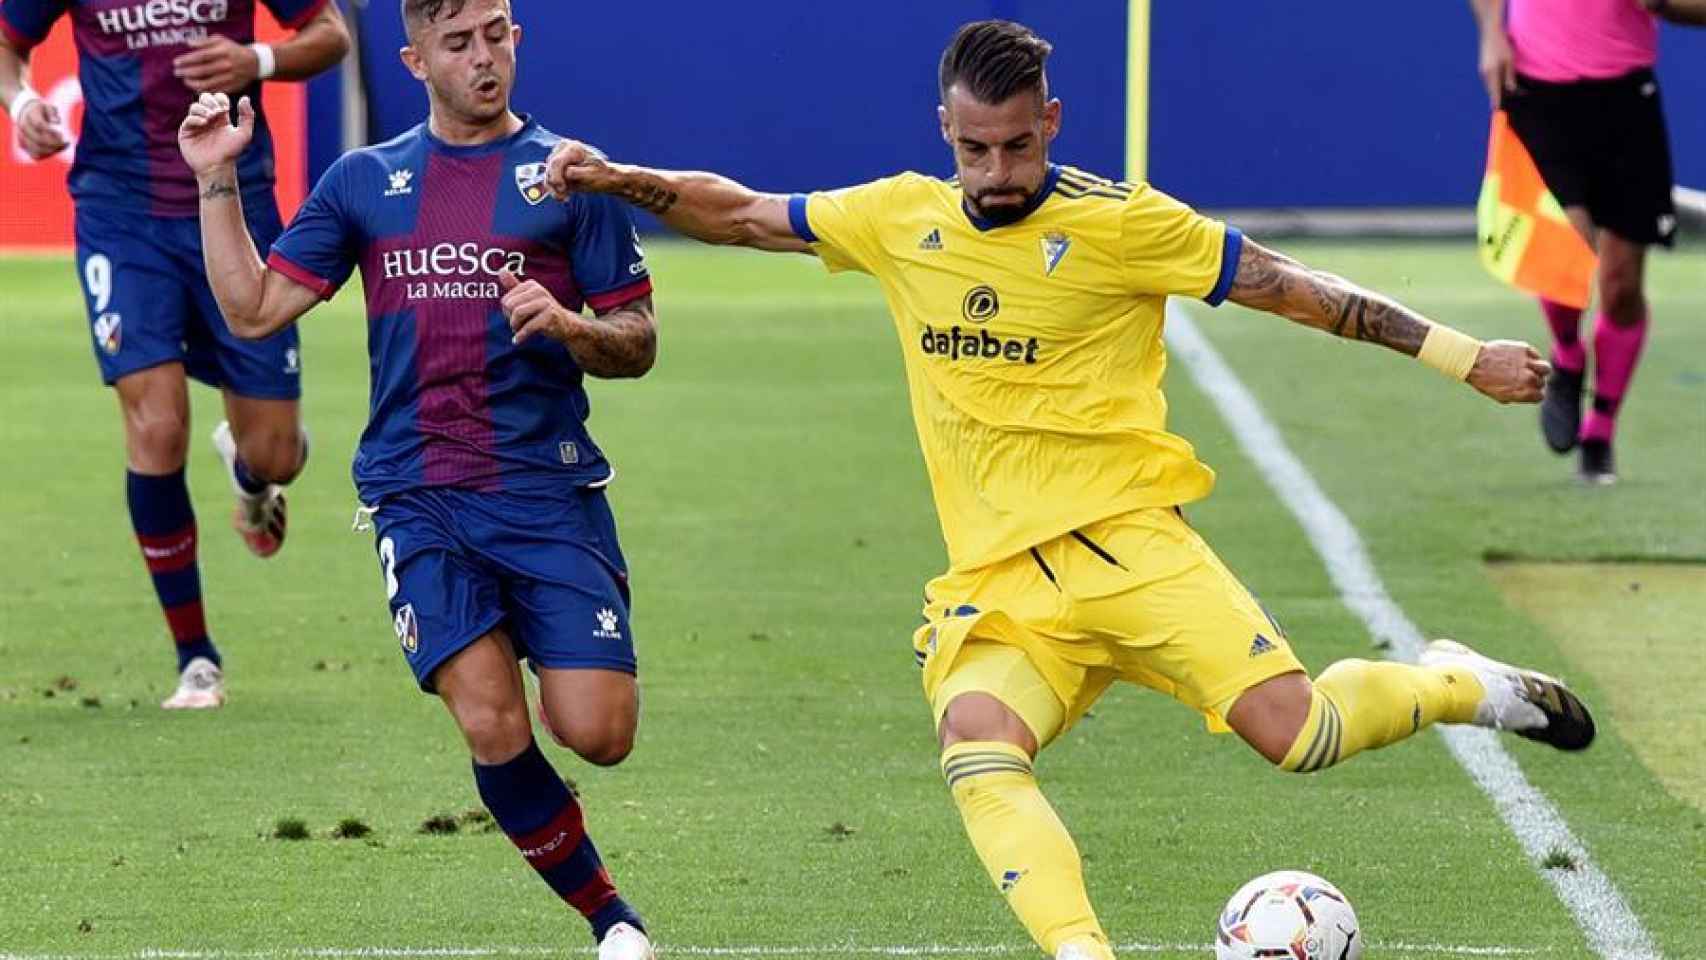 Álvaro Negredo ante Pablo Maffeo, en el Huesca - Cádiz de la jornada 2 de La Liga